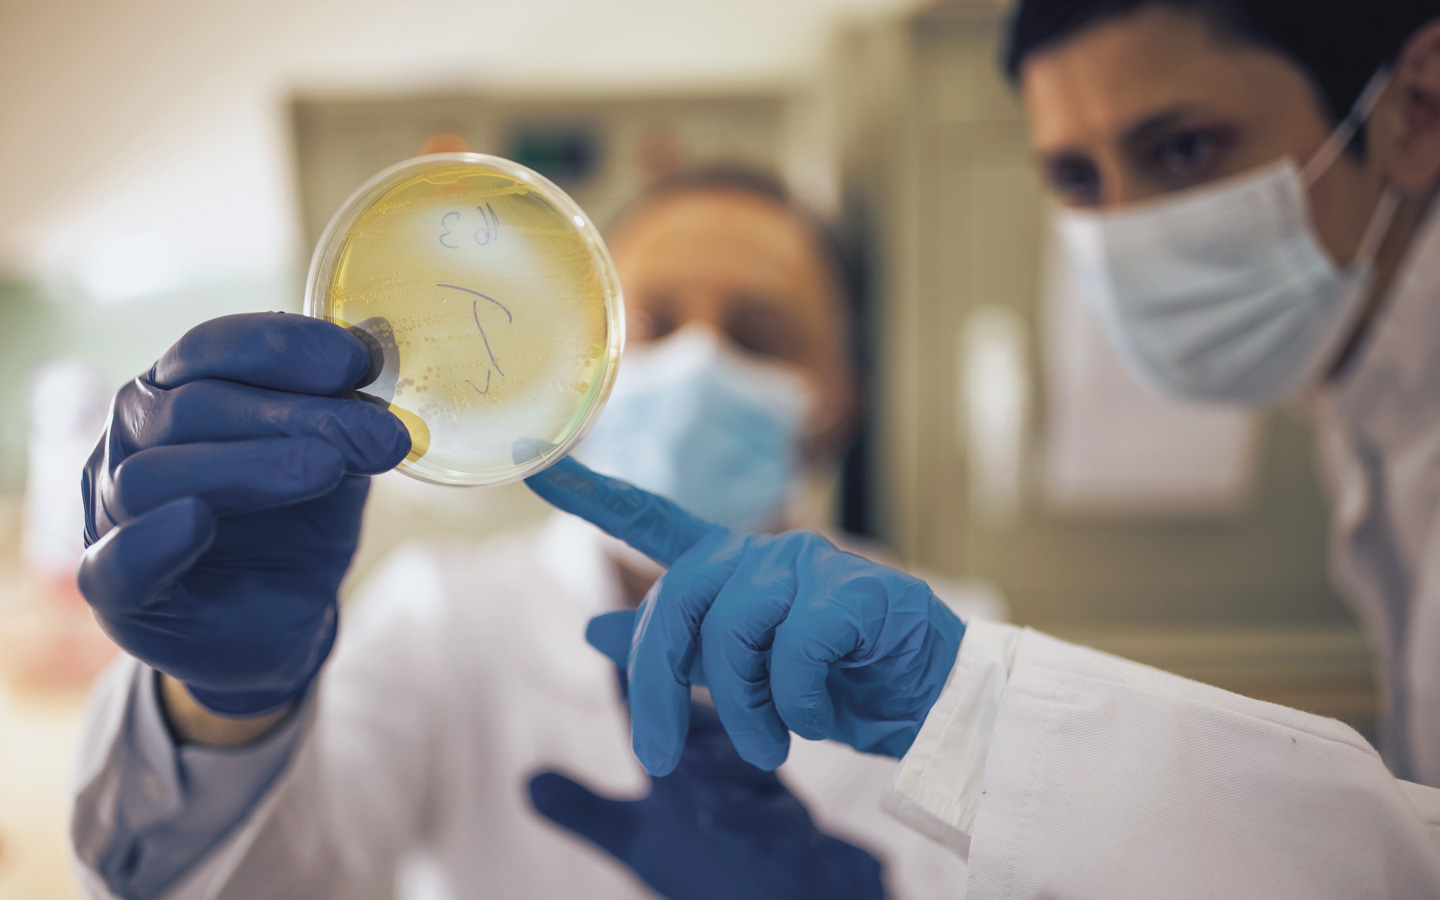 Foto: Zwei medizinische Kräfte schauen sich ein Untersuchungsergebnis in einer Petrischale an.